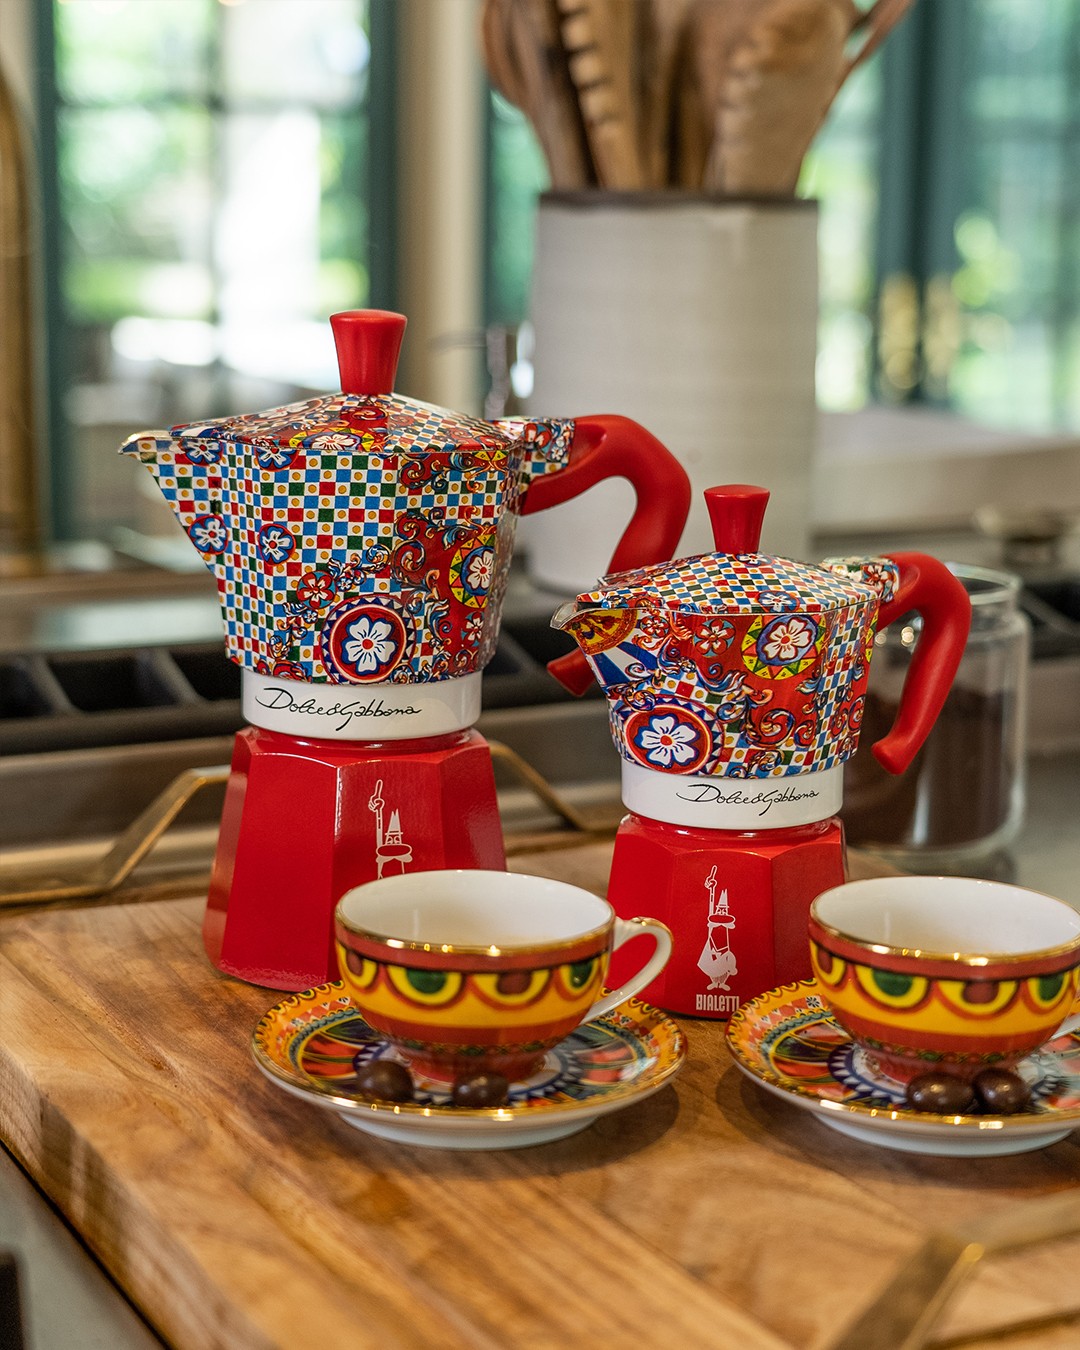 Caffettiera moka express 2 tazze bialetti per caffe cucina casa